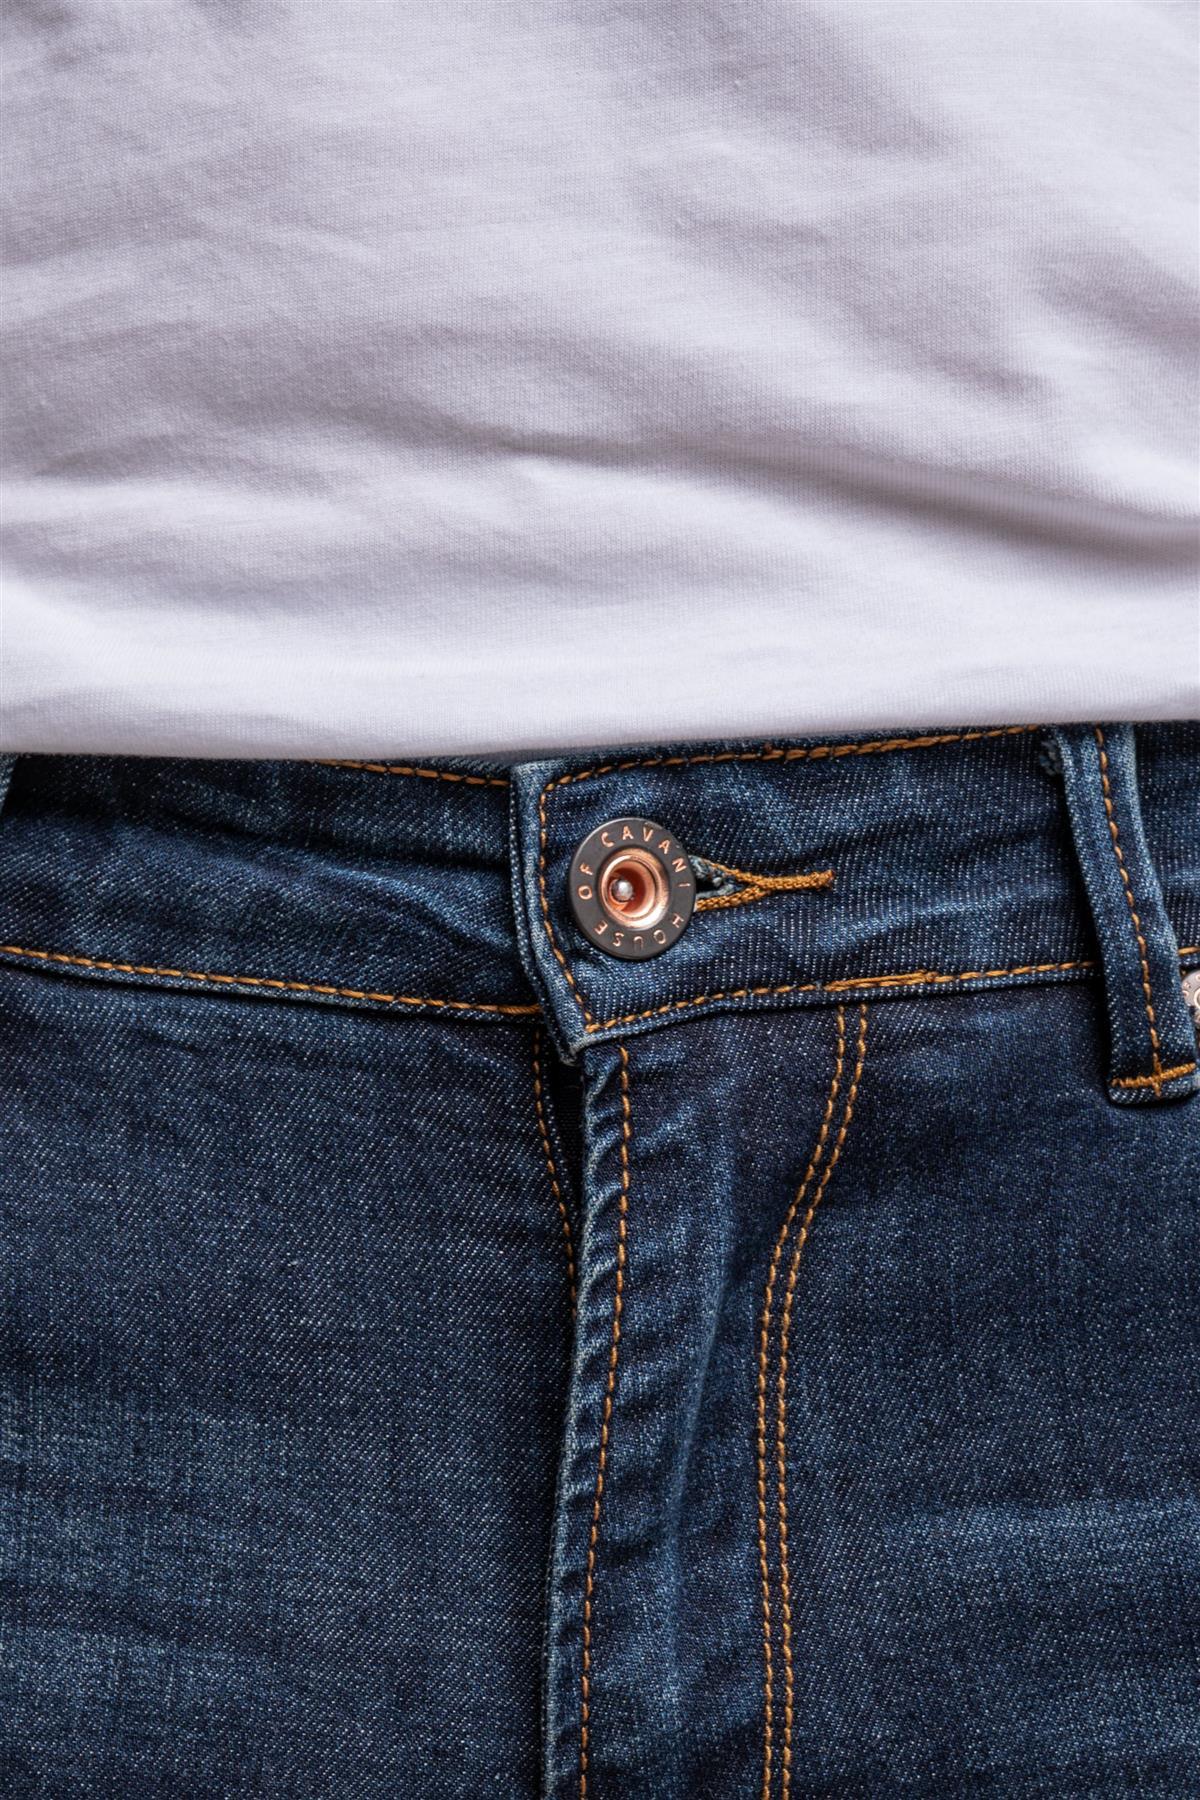 Diablo jeans front detail